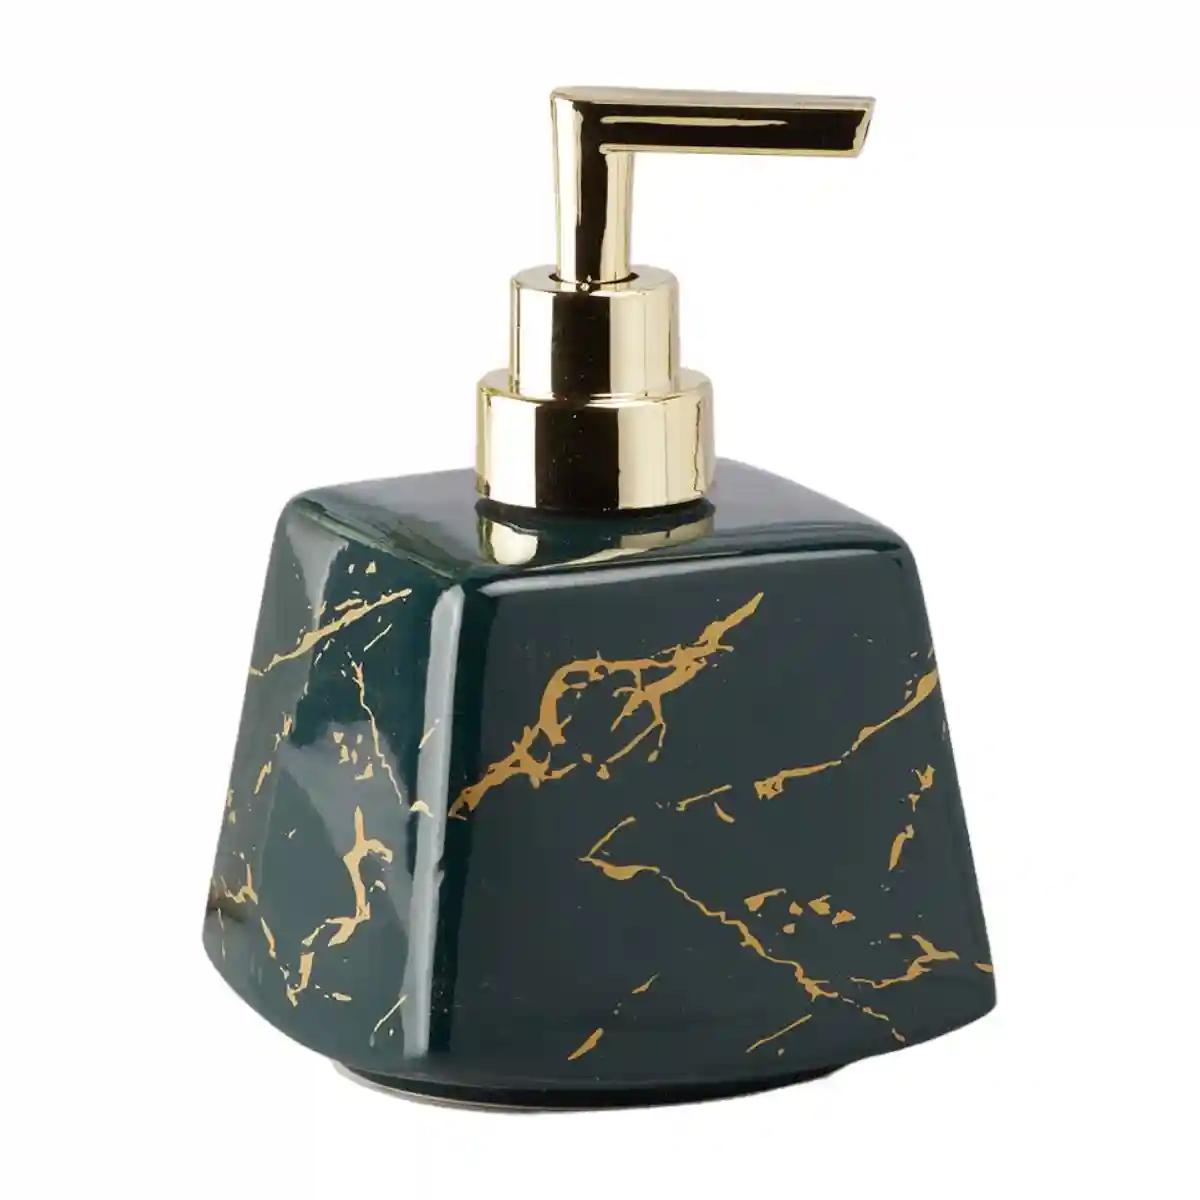 Kookee Ceramic Soap Dispenser for Bathroom handwash, refillable pump bottle for Kitchen hand wash basin, Set of 1 - Green (10151)